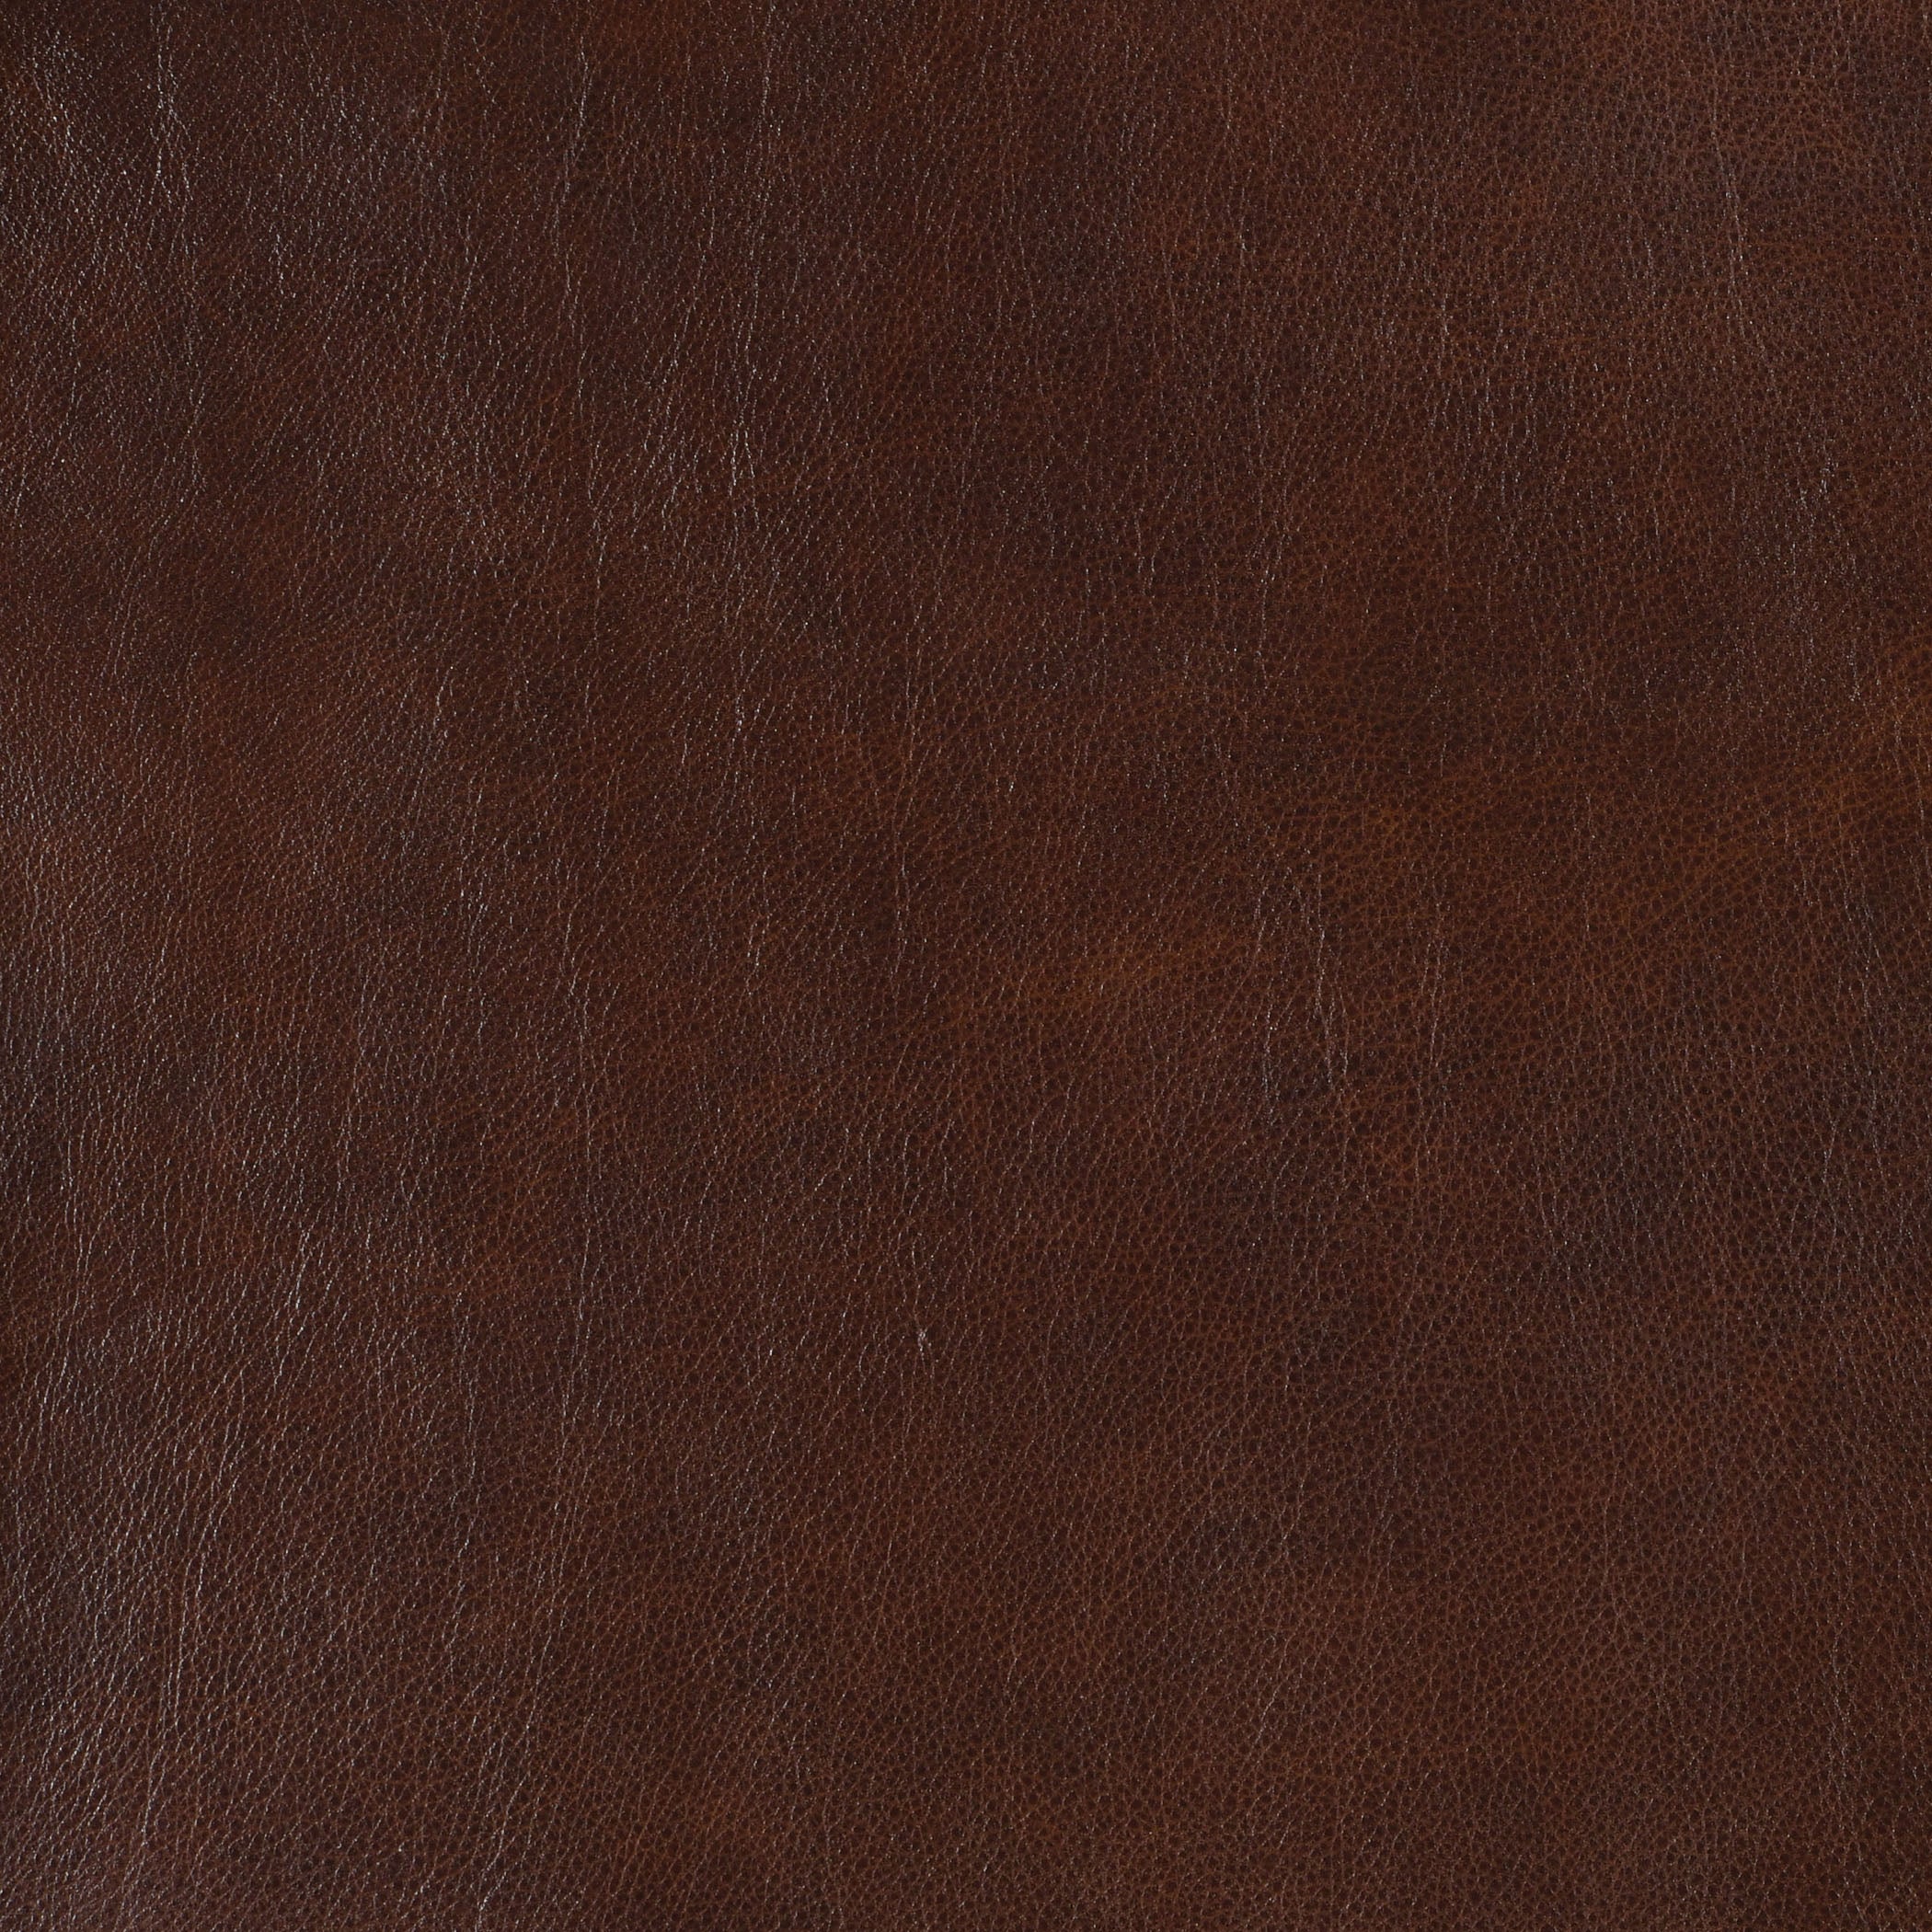 Copper-Buckeye Leather